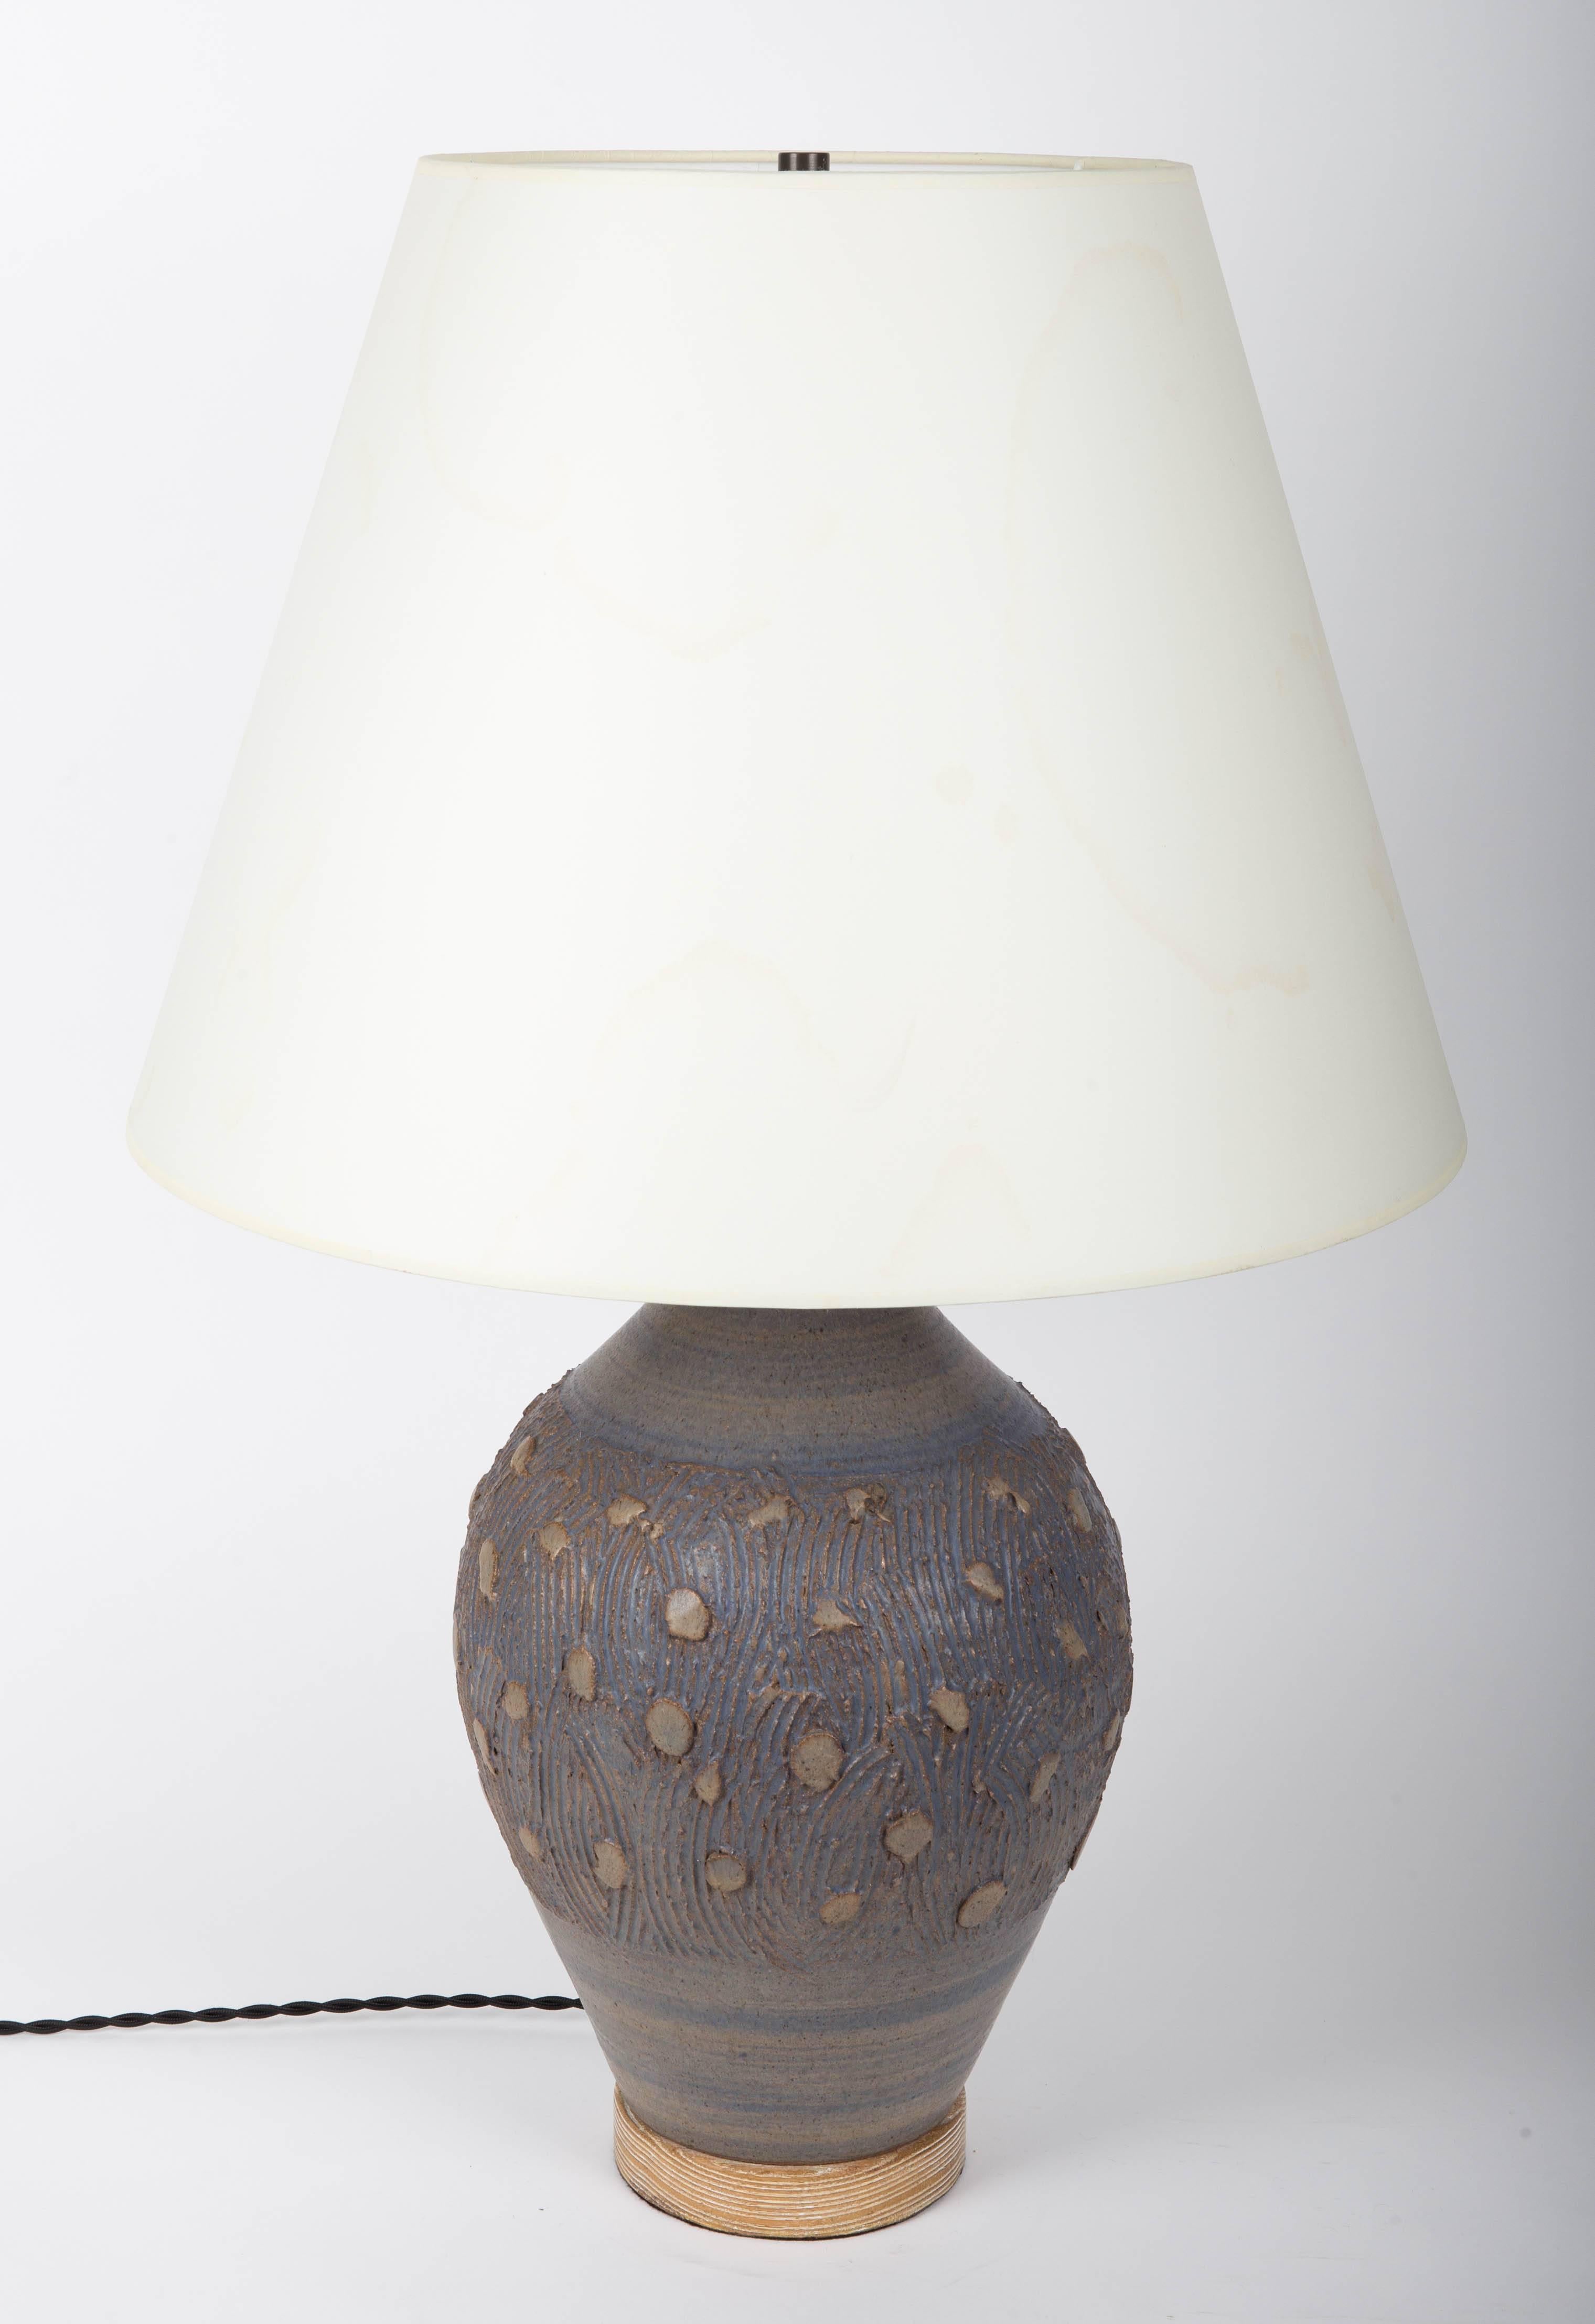 Blue lamp, dotted design, cerused oak base.